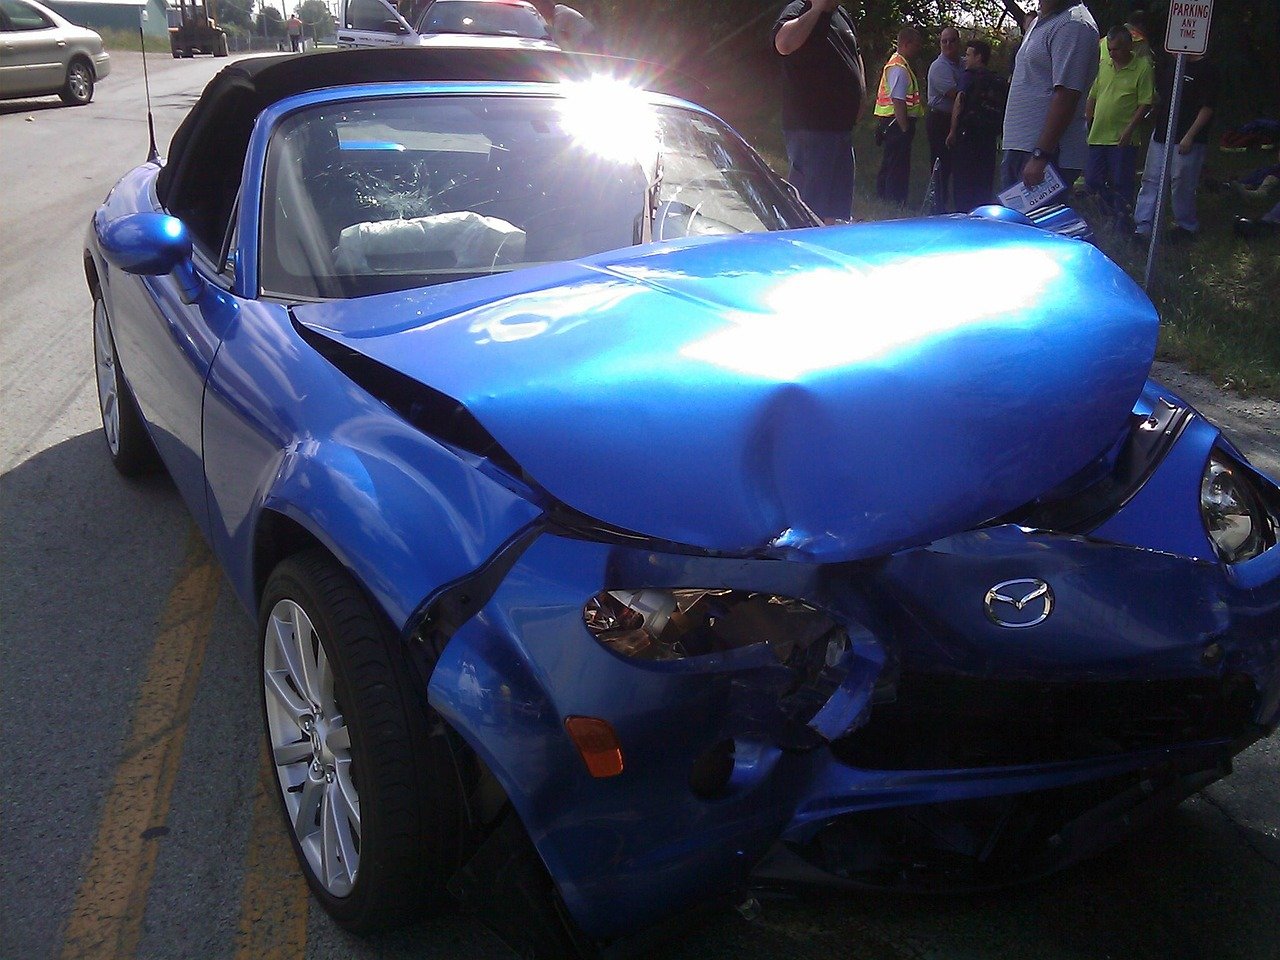 מי מפצה ברשלנות רפואית במקרה של תאונת דרכים?